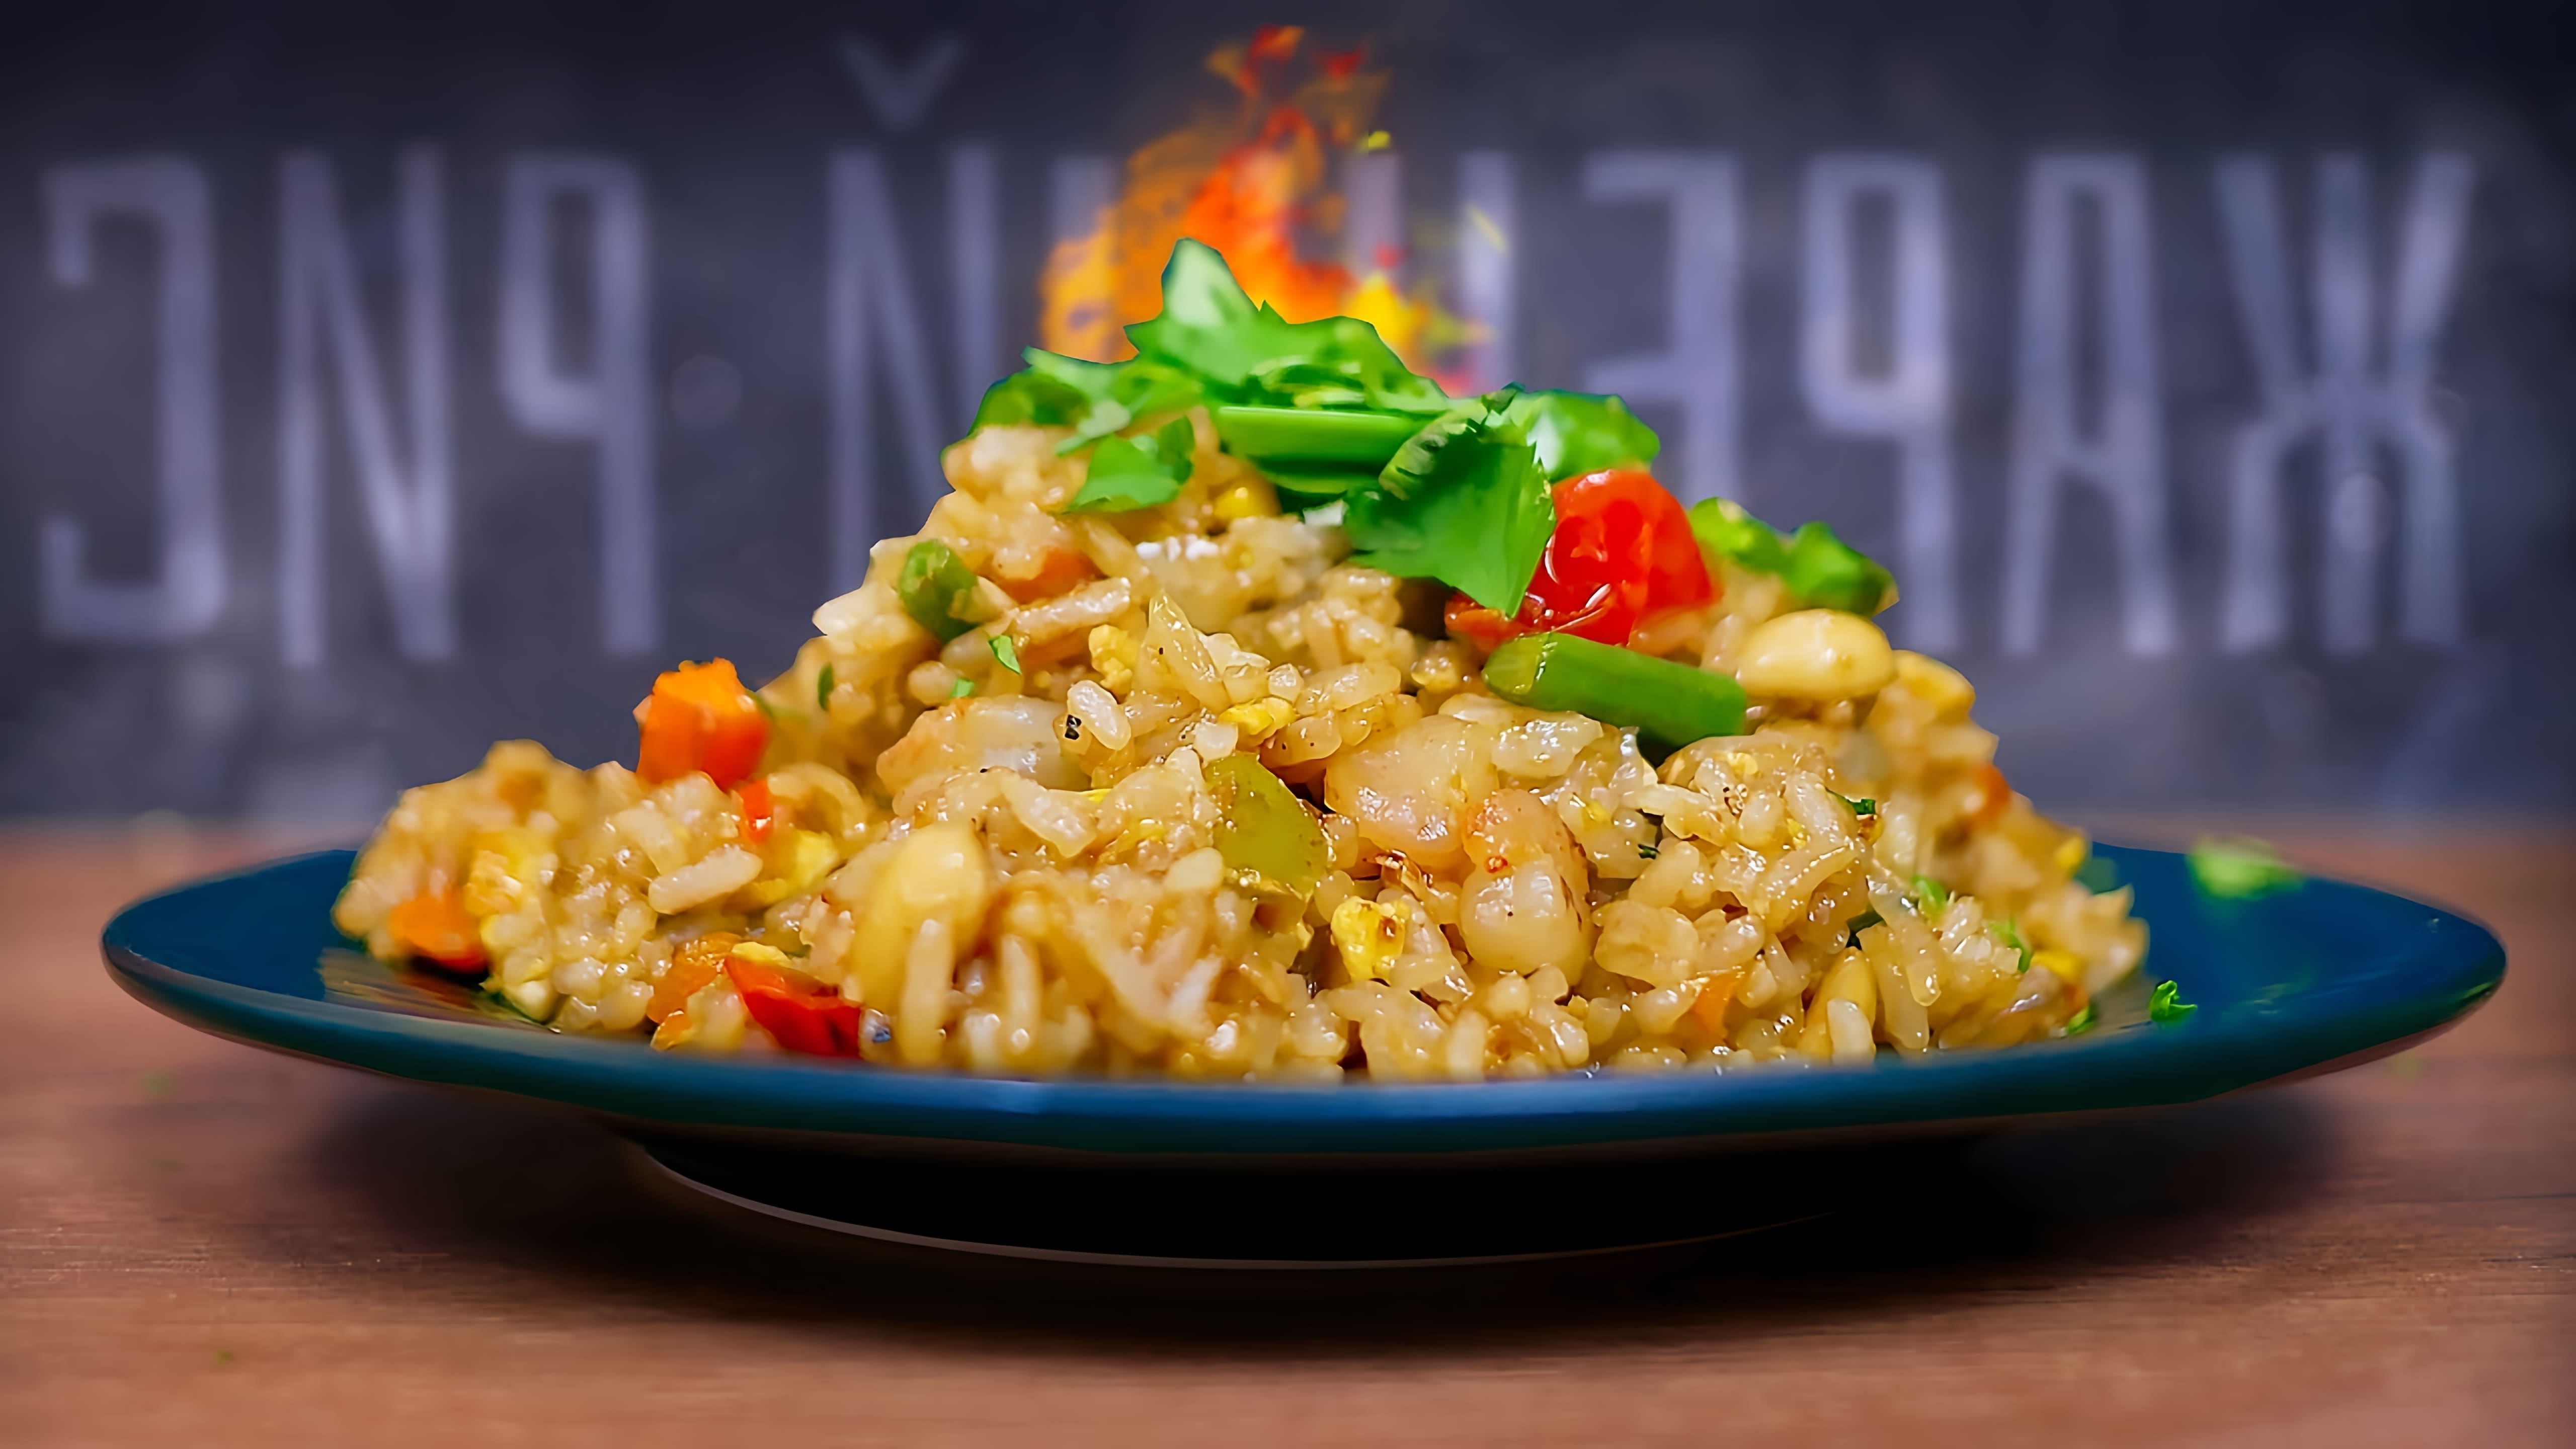 В этом видео демонстрируется рецепт тайского жареного риса (као пад)